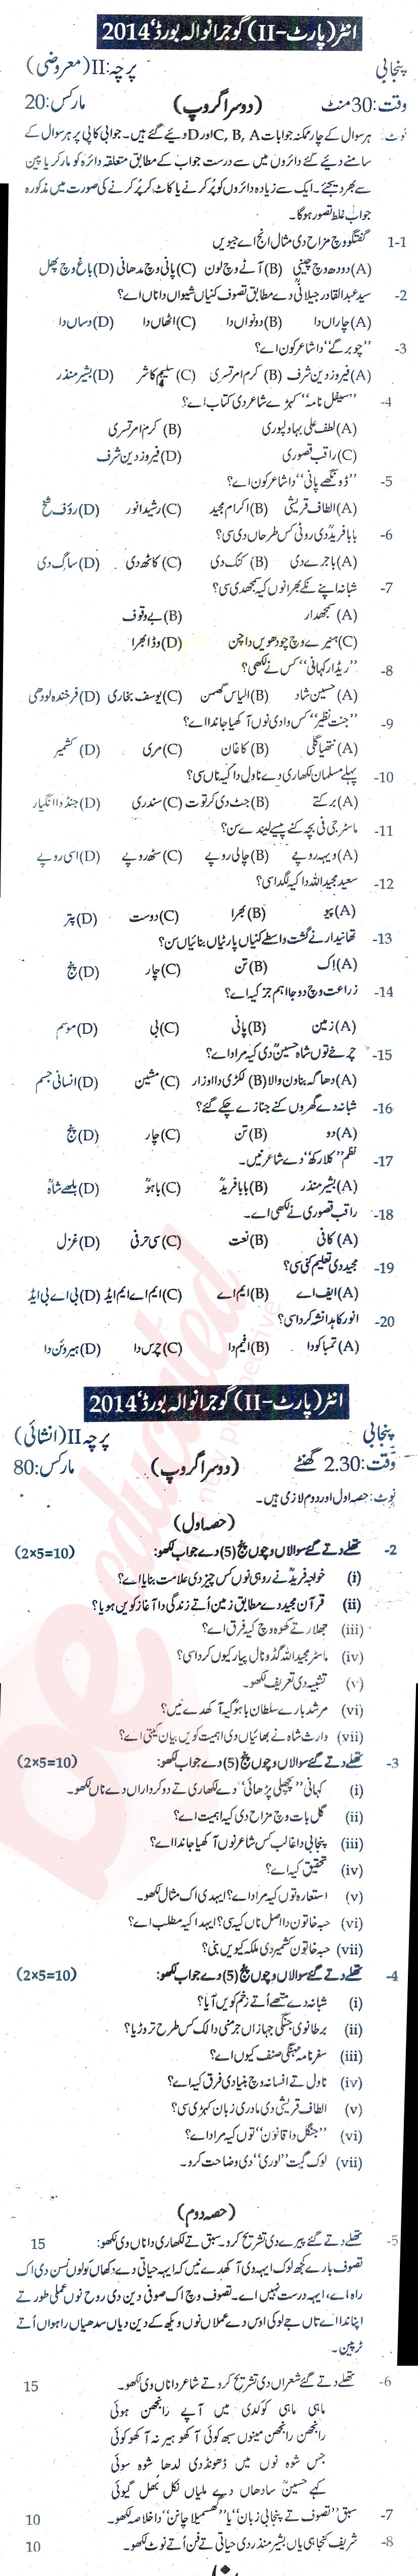 Punjabi FA Part 2 Past Paper Group 2 BISE Gujranwala 2014